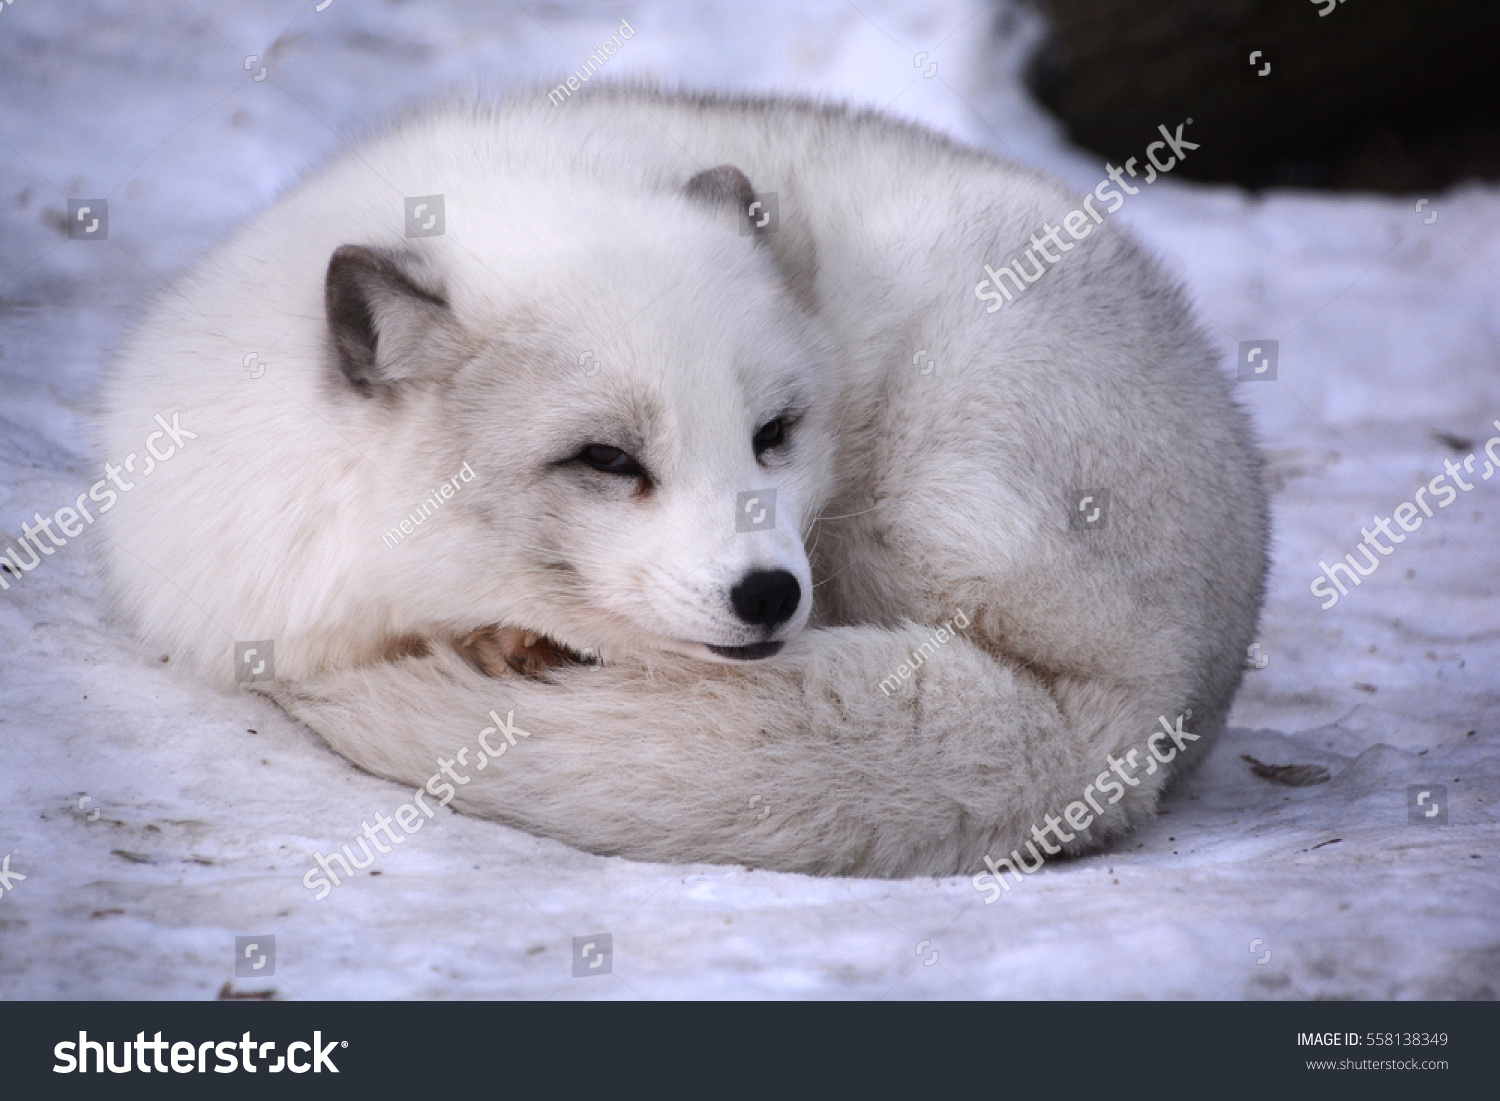 白狐 白狐 白狐 雪狐とも呼ばれる北極のキツネは 北半球の北極地方原産で 北極ツンドラ生物群系全域でよく見られる小さなキツネである の写真素材 今すぐ編集